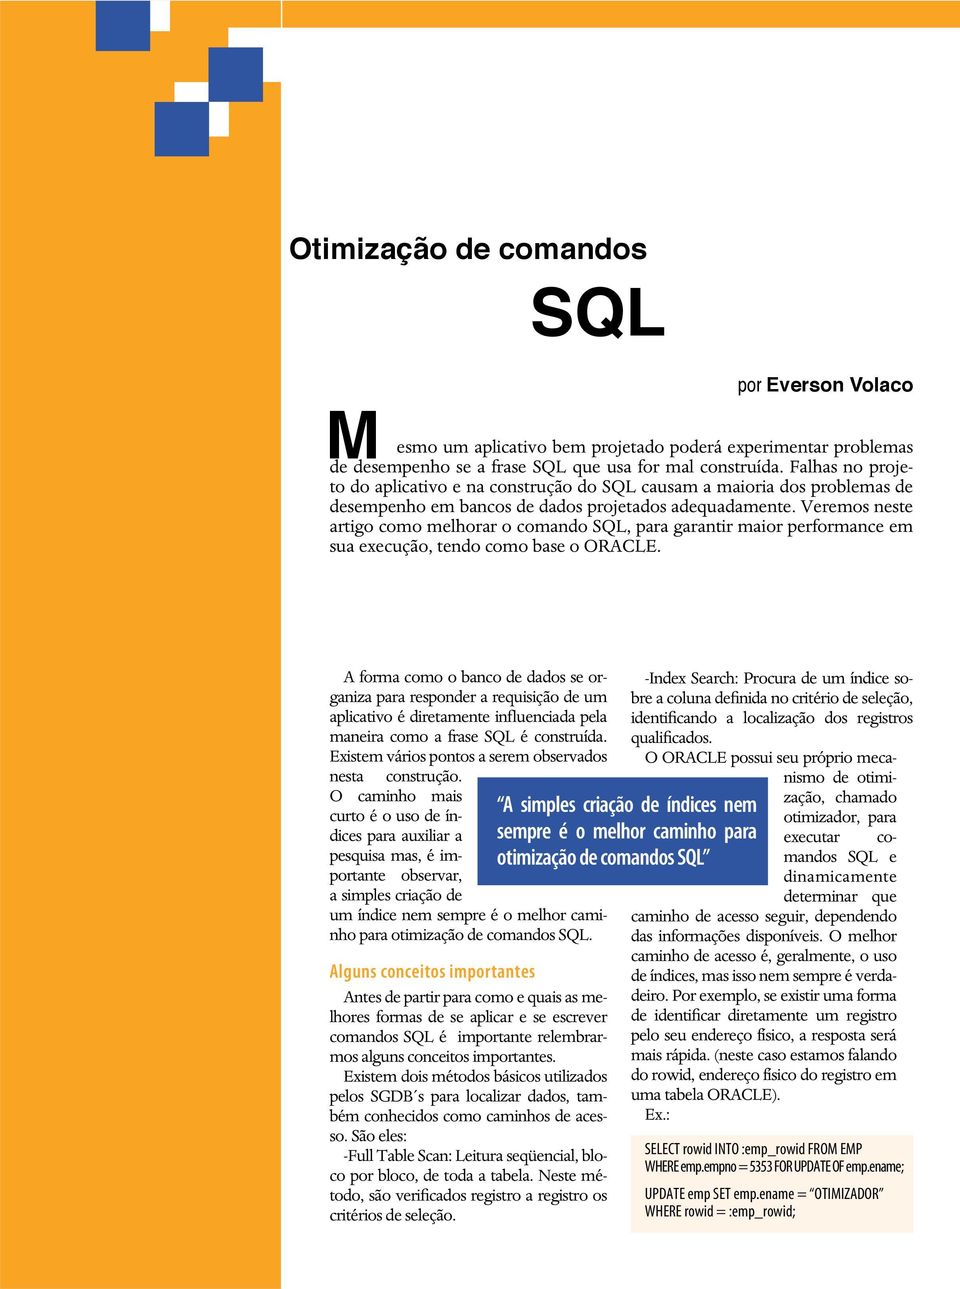 Veremos neste artigo como melhorar o comando SQL, para garantir maior performance em sua execução, tendo como base o ORACLE.